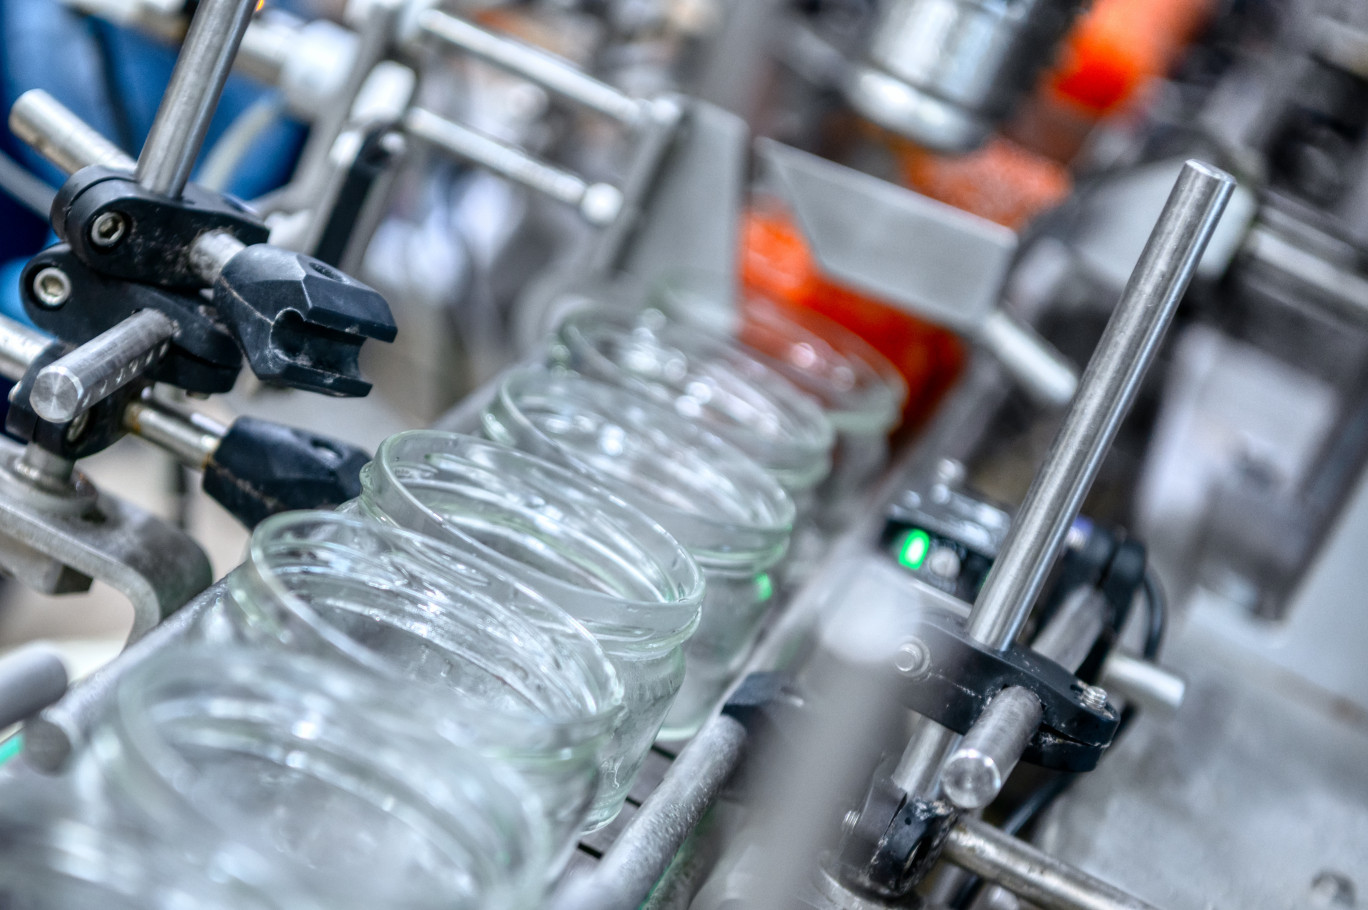 En misant sur le conditionnement en bocal de verre, les industriels de Bourgogne-Franche-Comté entendent réduire leur empreinte carbone. (Vitagora)